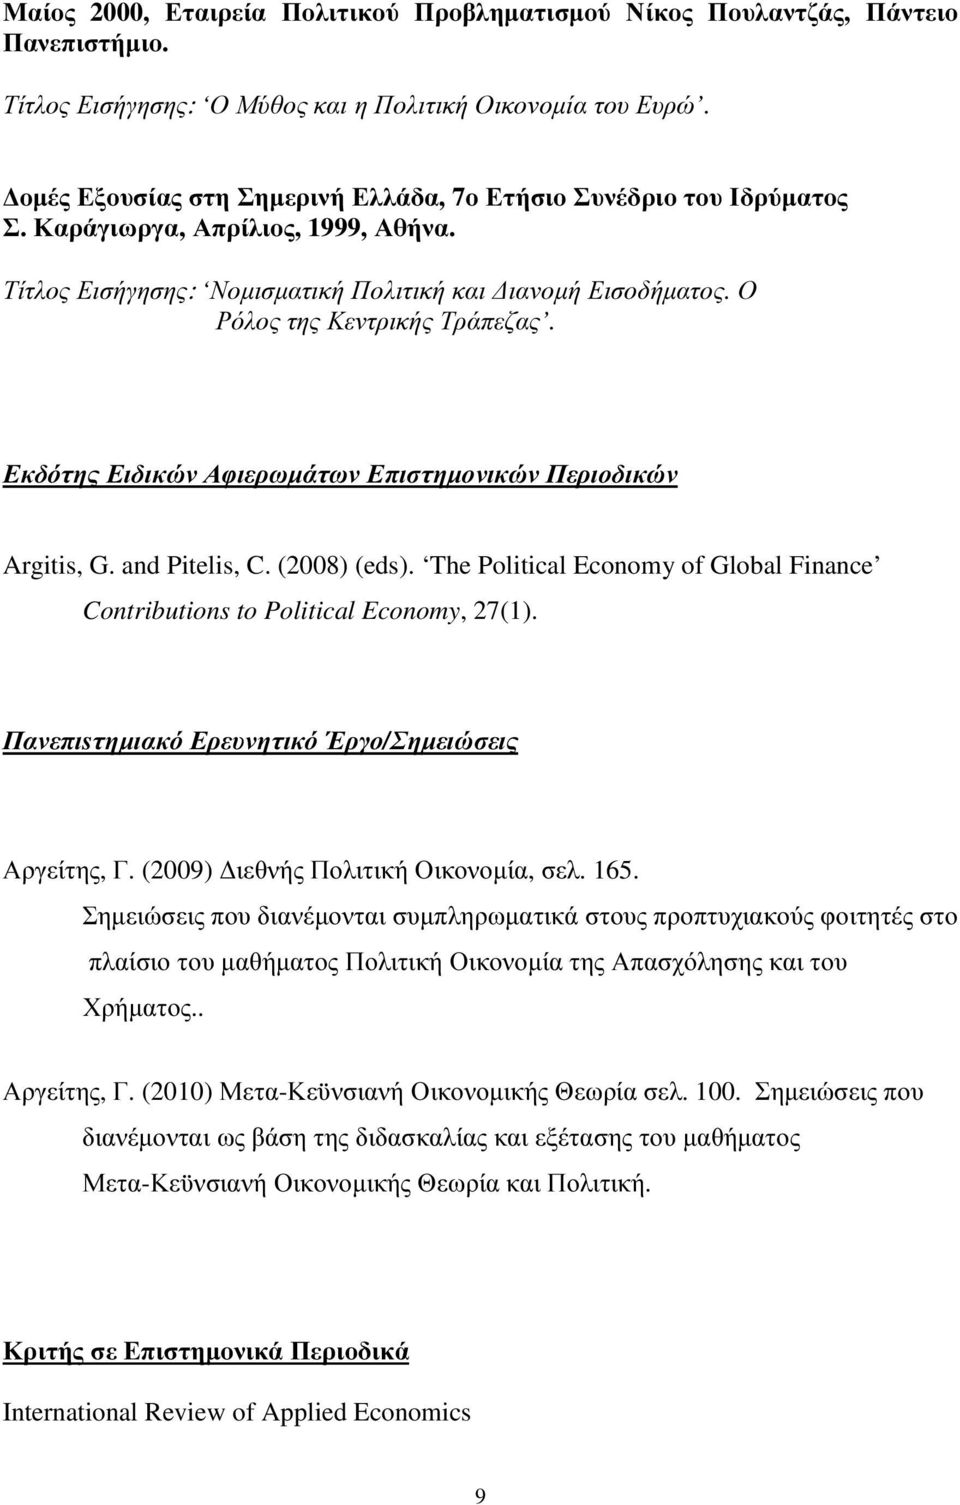 Εκδότης Ειδικών Αφιερωµάτων Επιστηµονικών Περιοδικών Argitis, G. and Pitelis, C. (2008) (eds). The Political Economy of Global Finance Contributions to Political Economy, 27(1).